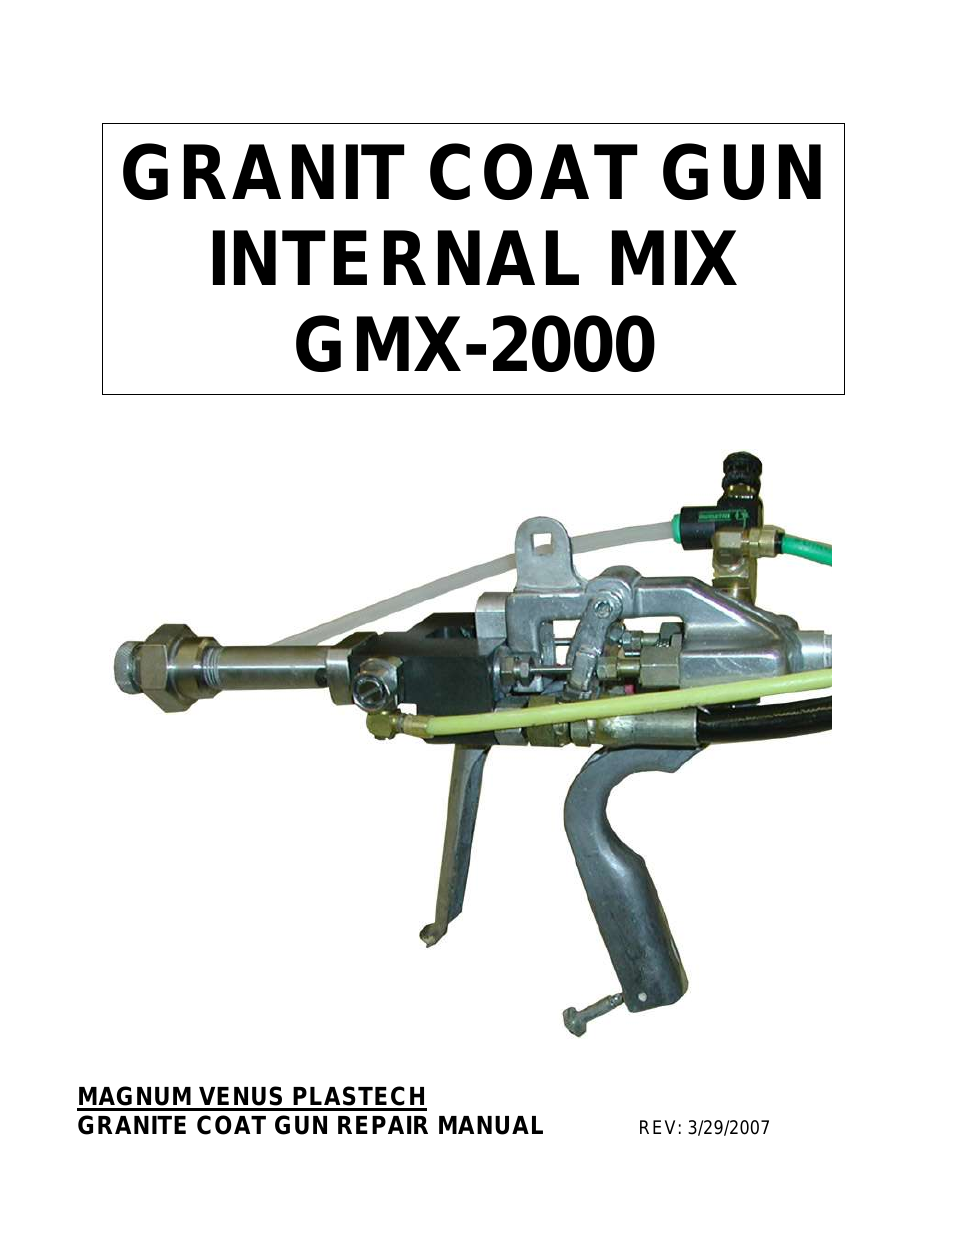 GMX-2000 GRANIT COAT GUN